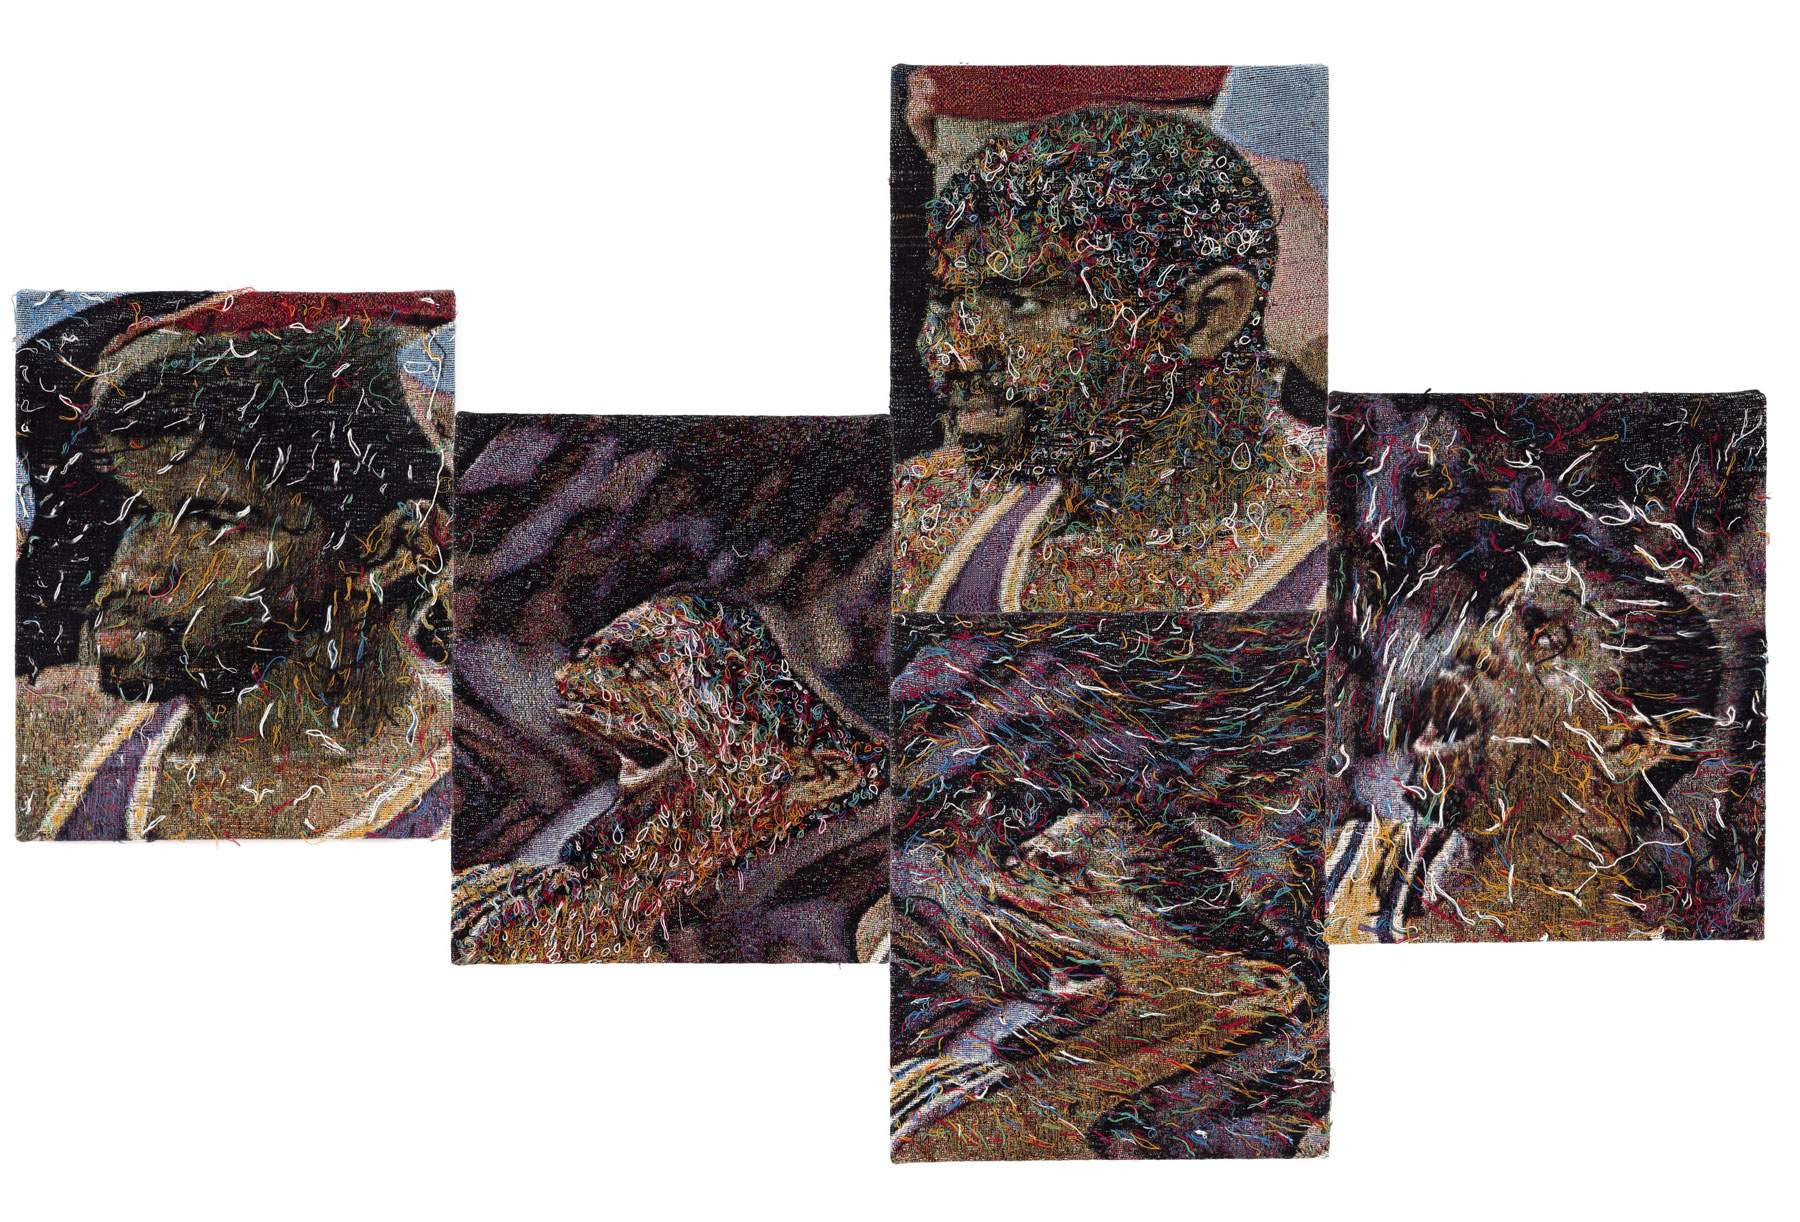 Exposition des tapisseries de Noel W. Anderson à Milan. Anderson sur le récit déformé de l'identité noire